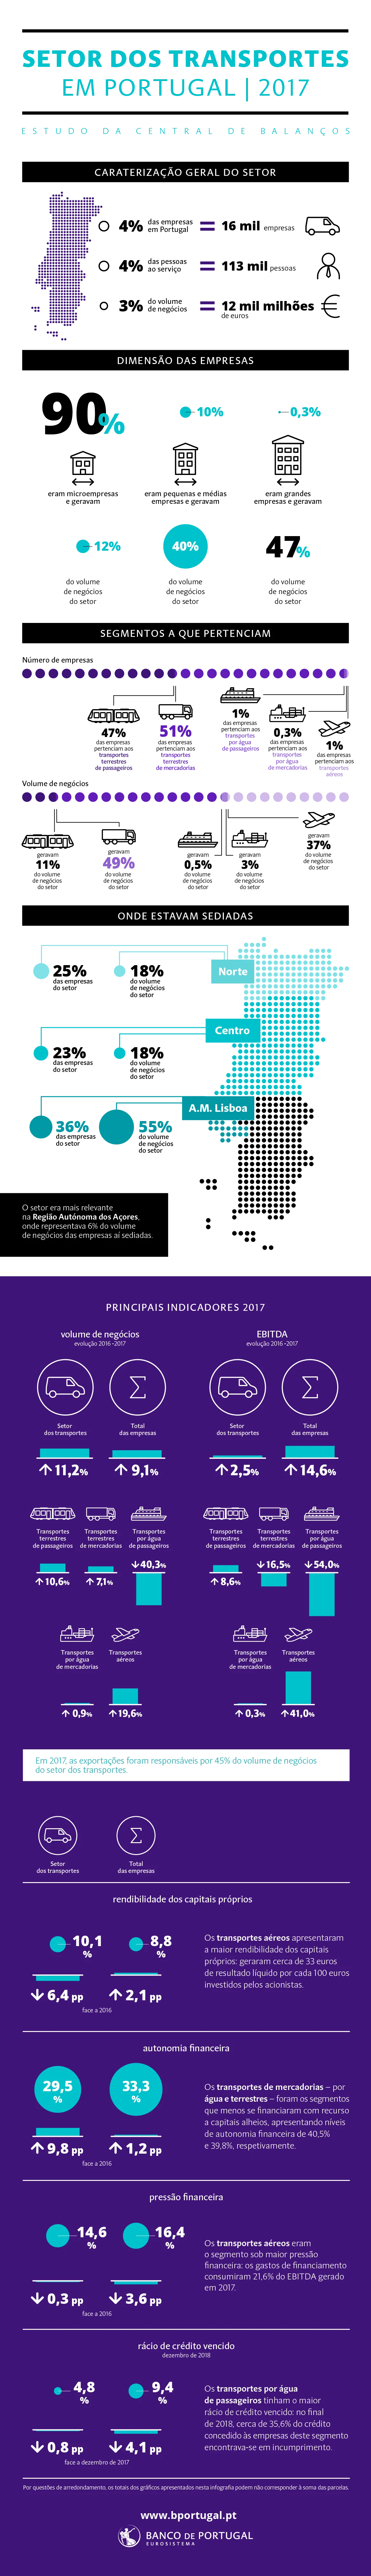 Infografia - Estudo da Central de Balanços: Análise das empresas do setor dos transportes 2017